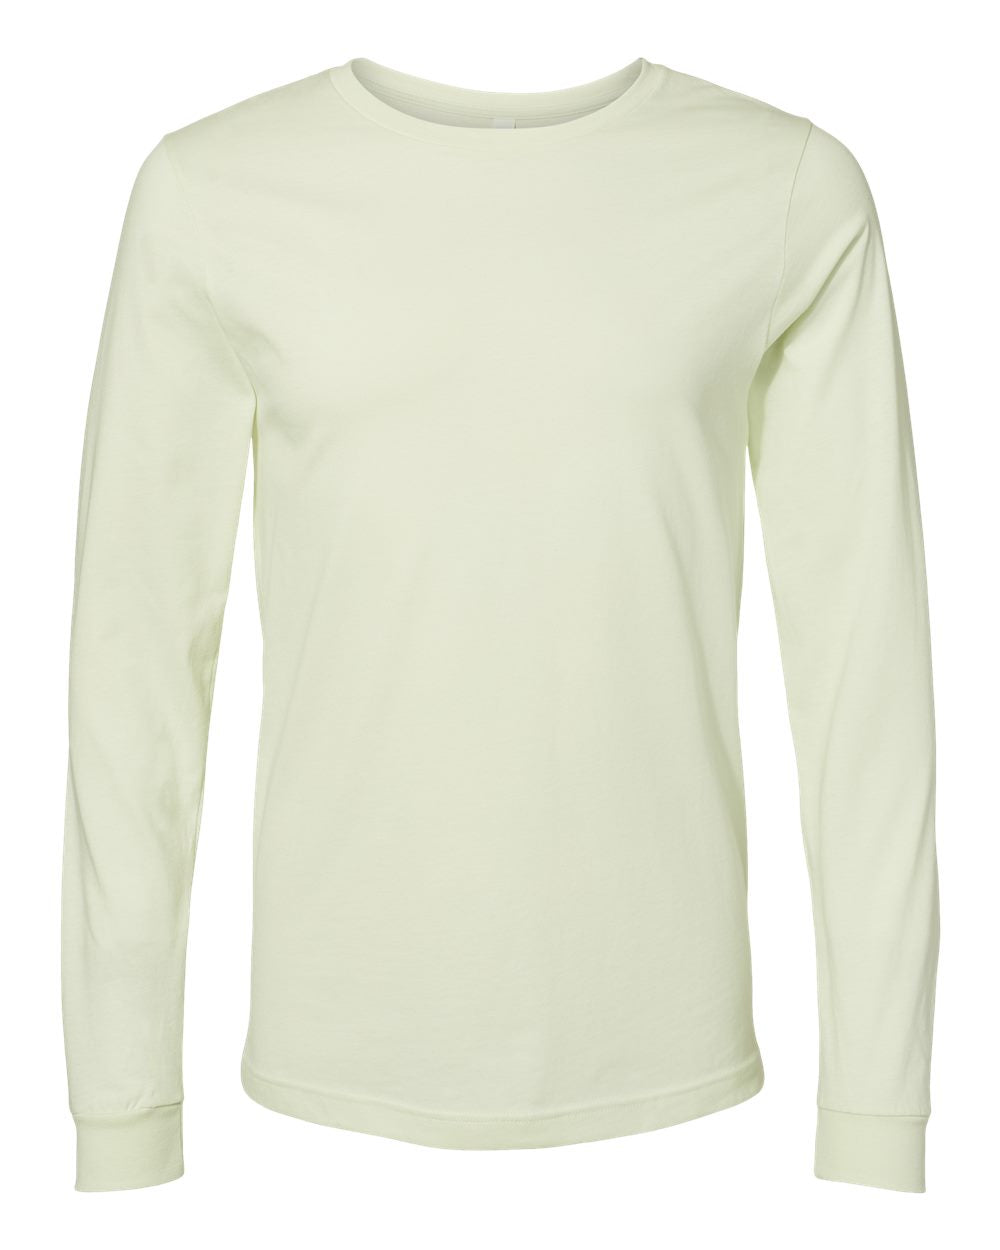 Bella + Canvas Unisex Jersey Long Sleeve T-Shirt